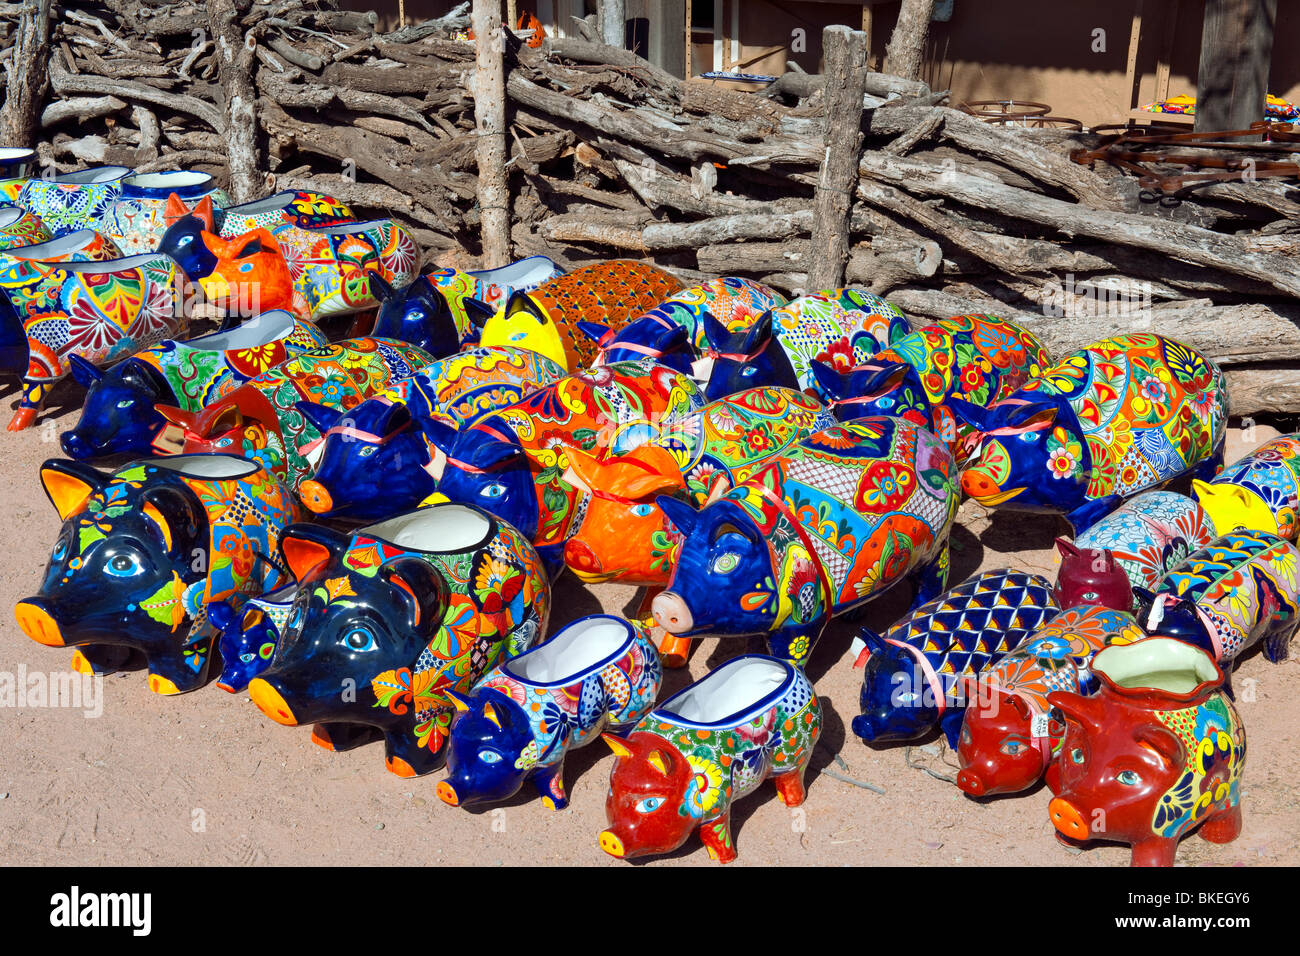 La petite ville de Tubac, Arizona, est connu pour son mélange éclectique de boutiques, galeries d'art et de poteries colorées s'affiche. Banque D'Images